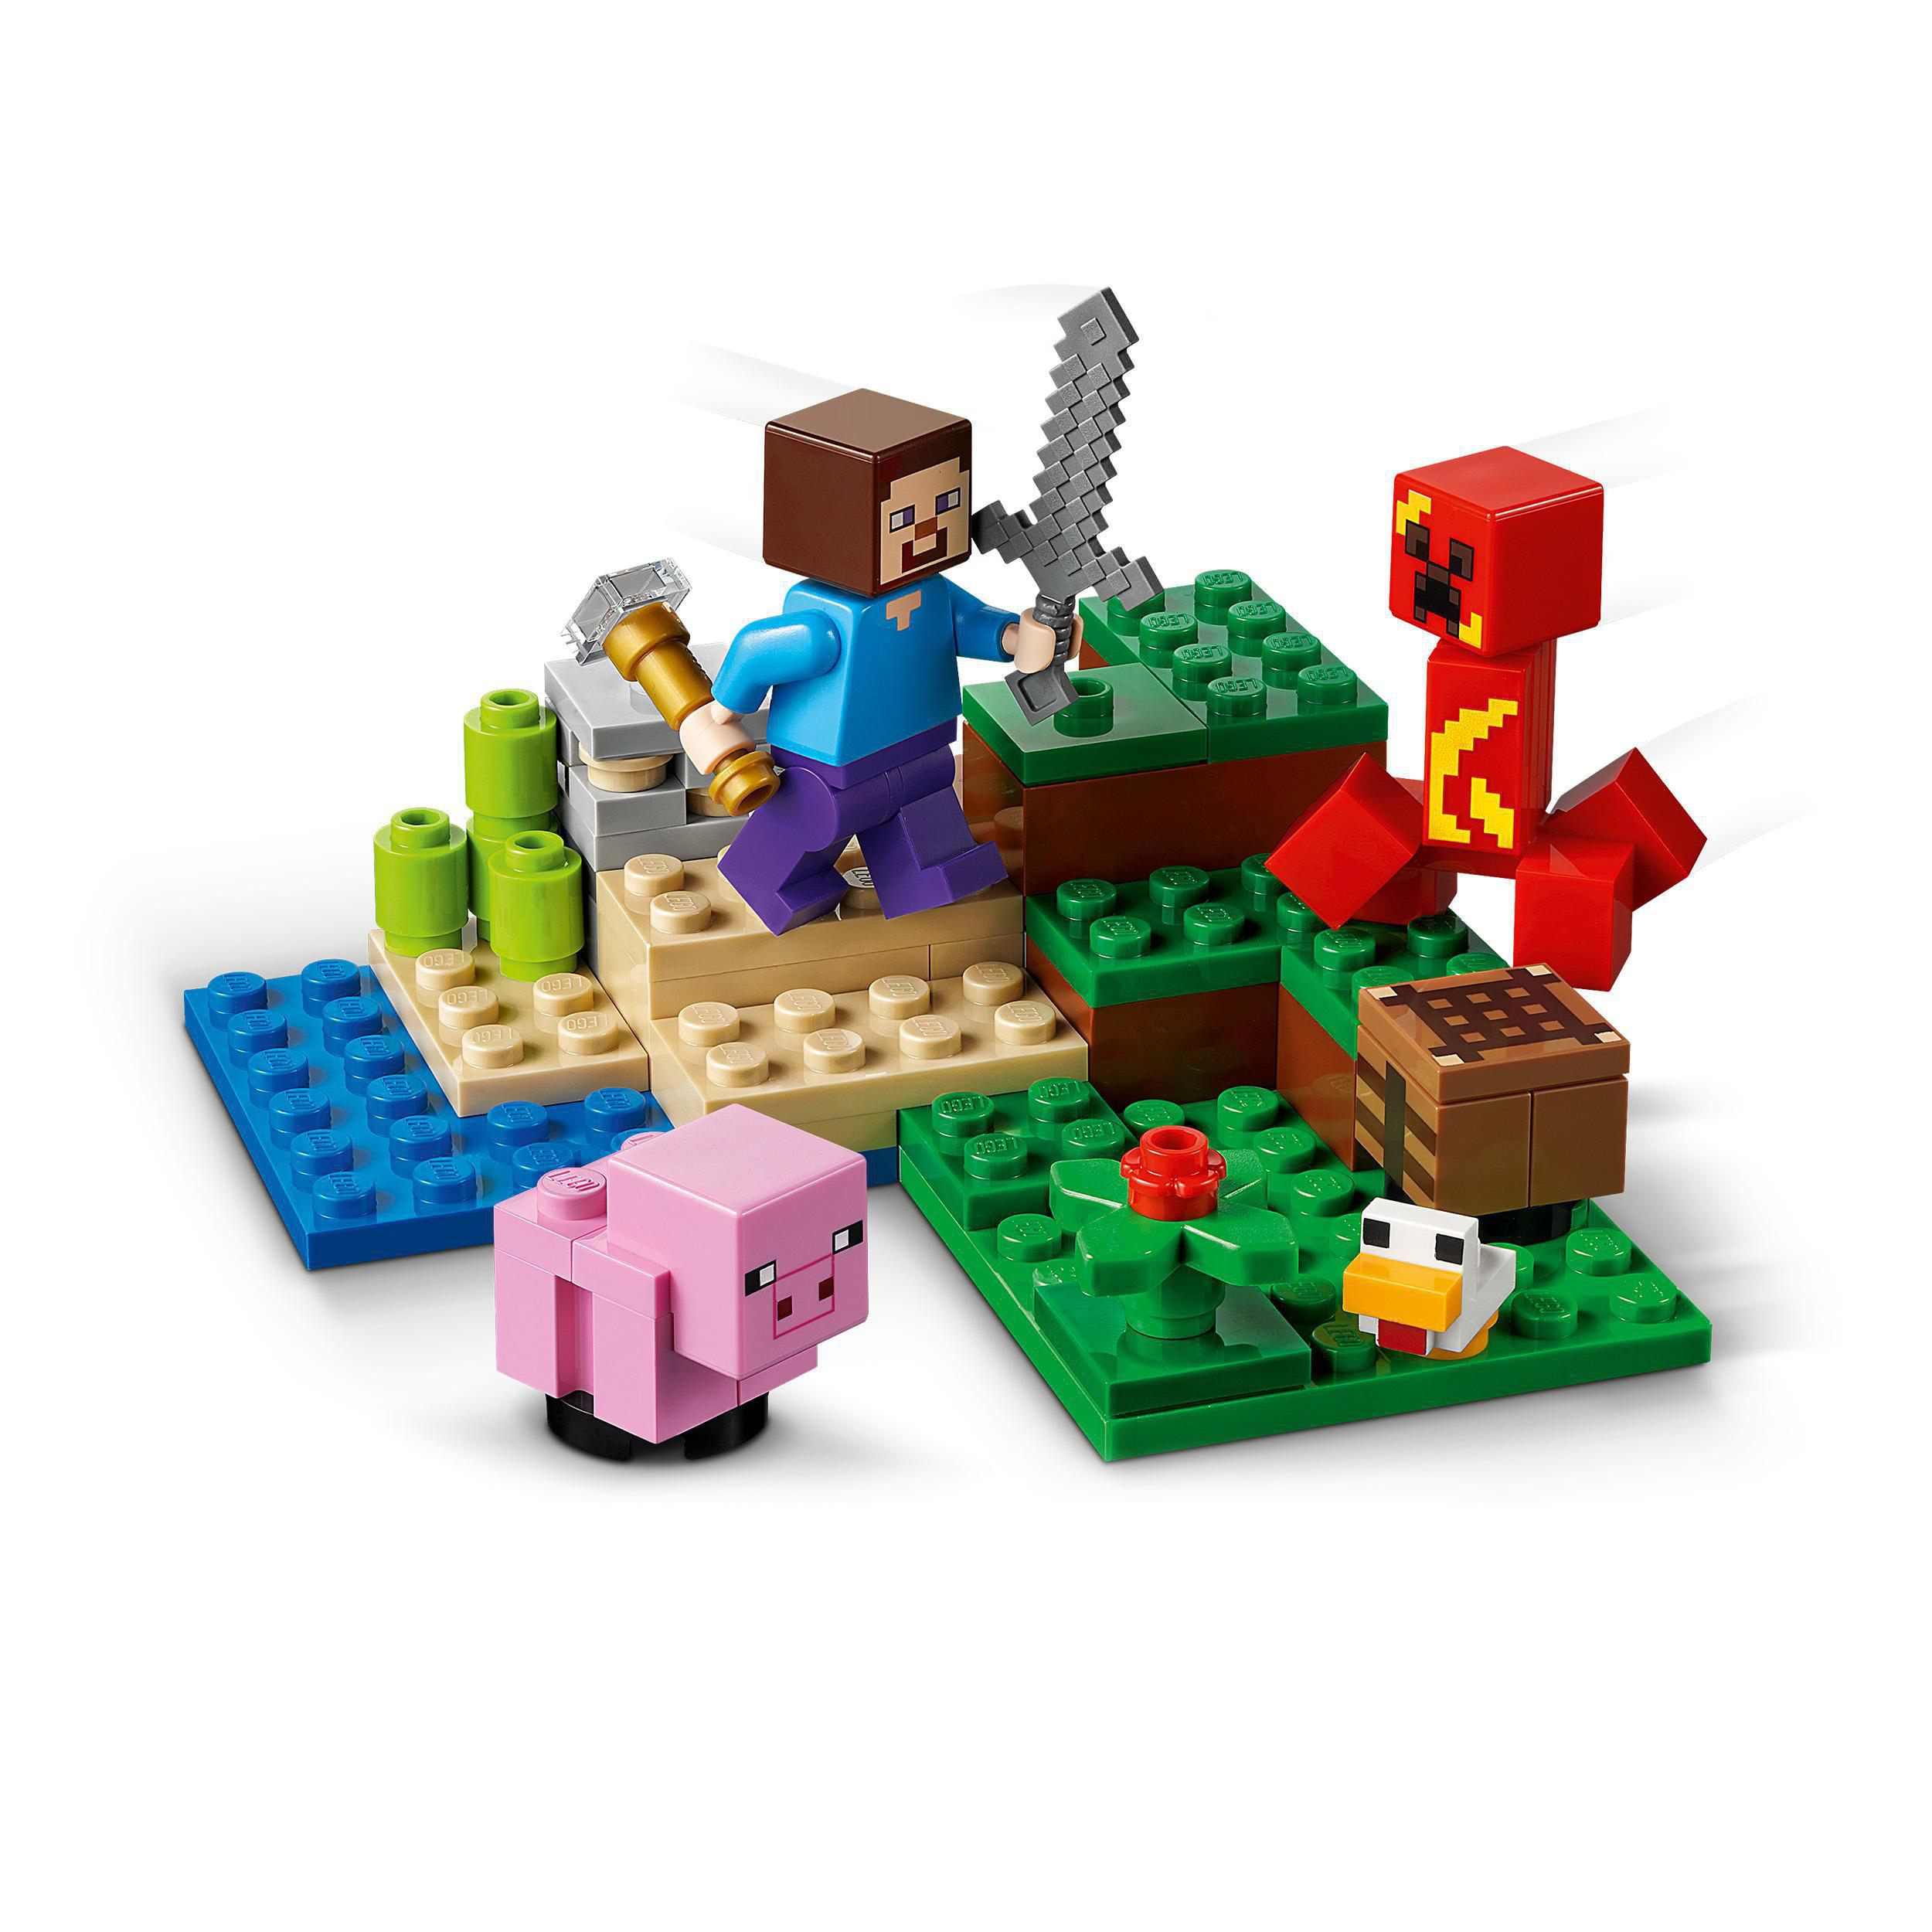 21177 Hinterhalt Mehrfarbig Creeper™ Bausatz, des Minecraft LEGO Der